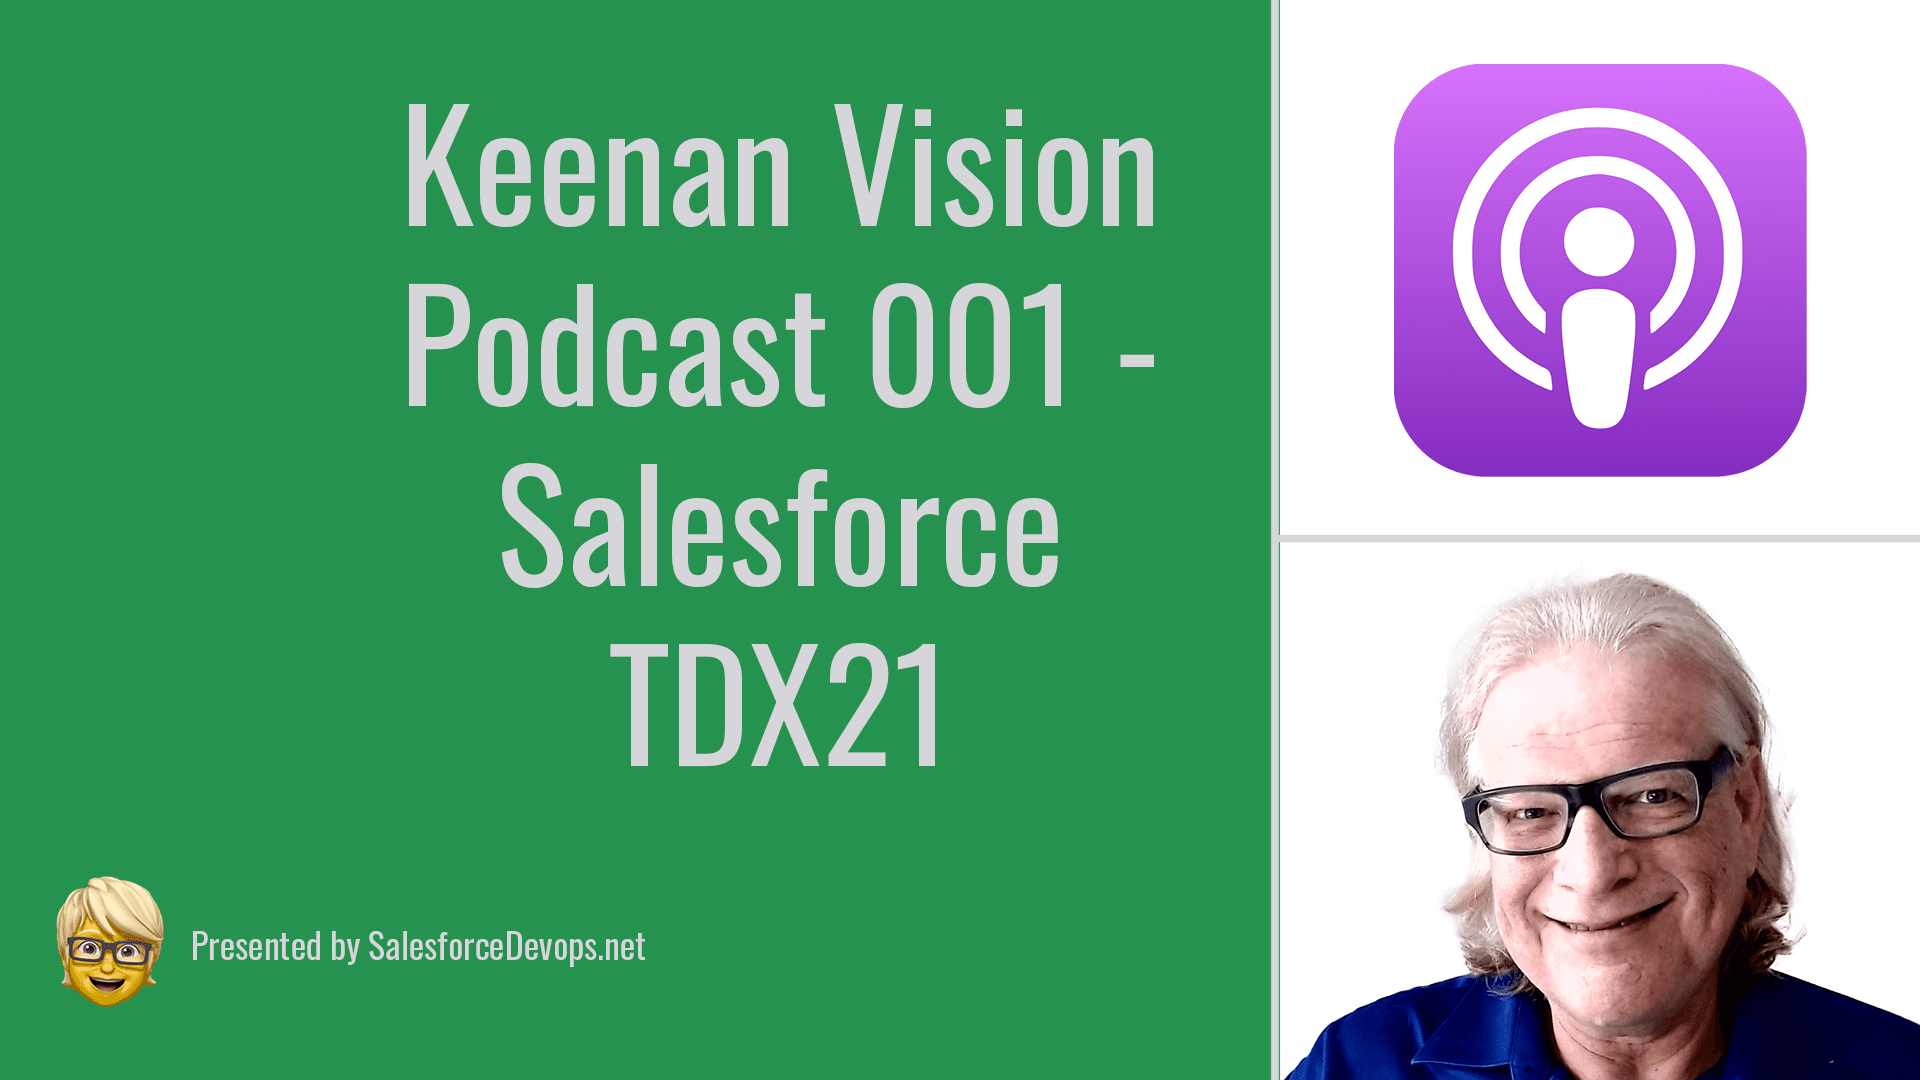 Keenan Vision Podcast Salesforce TDX 21